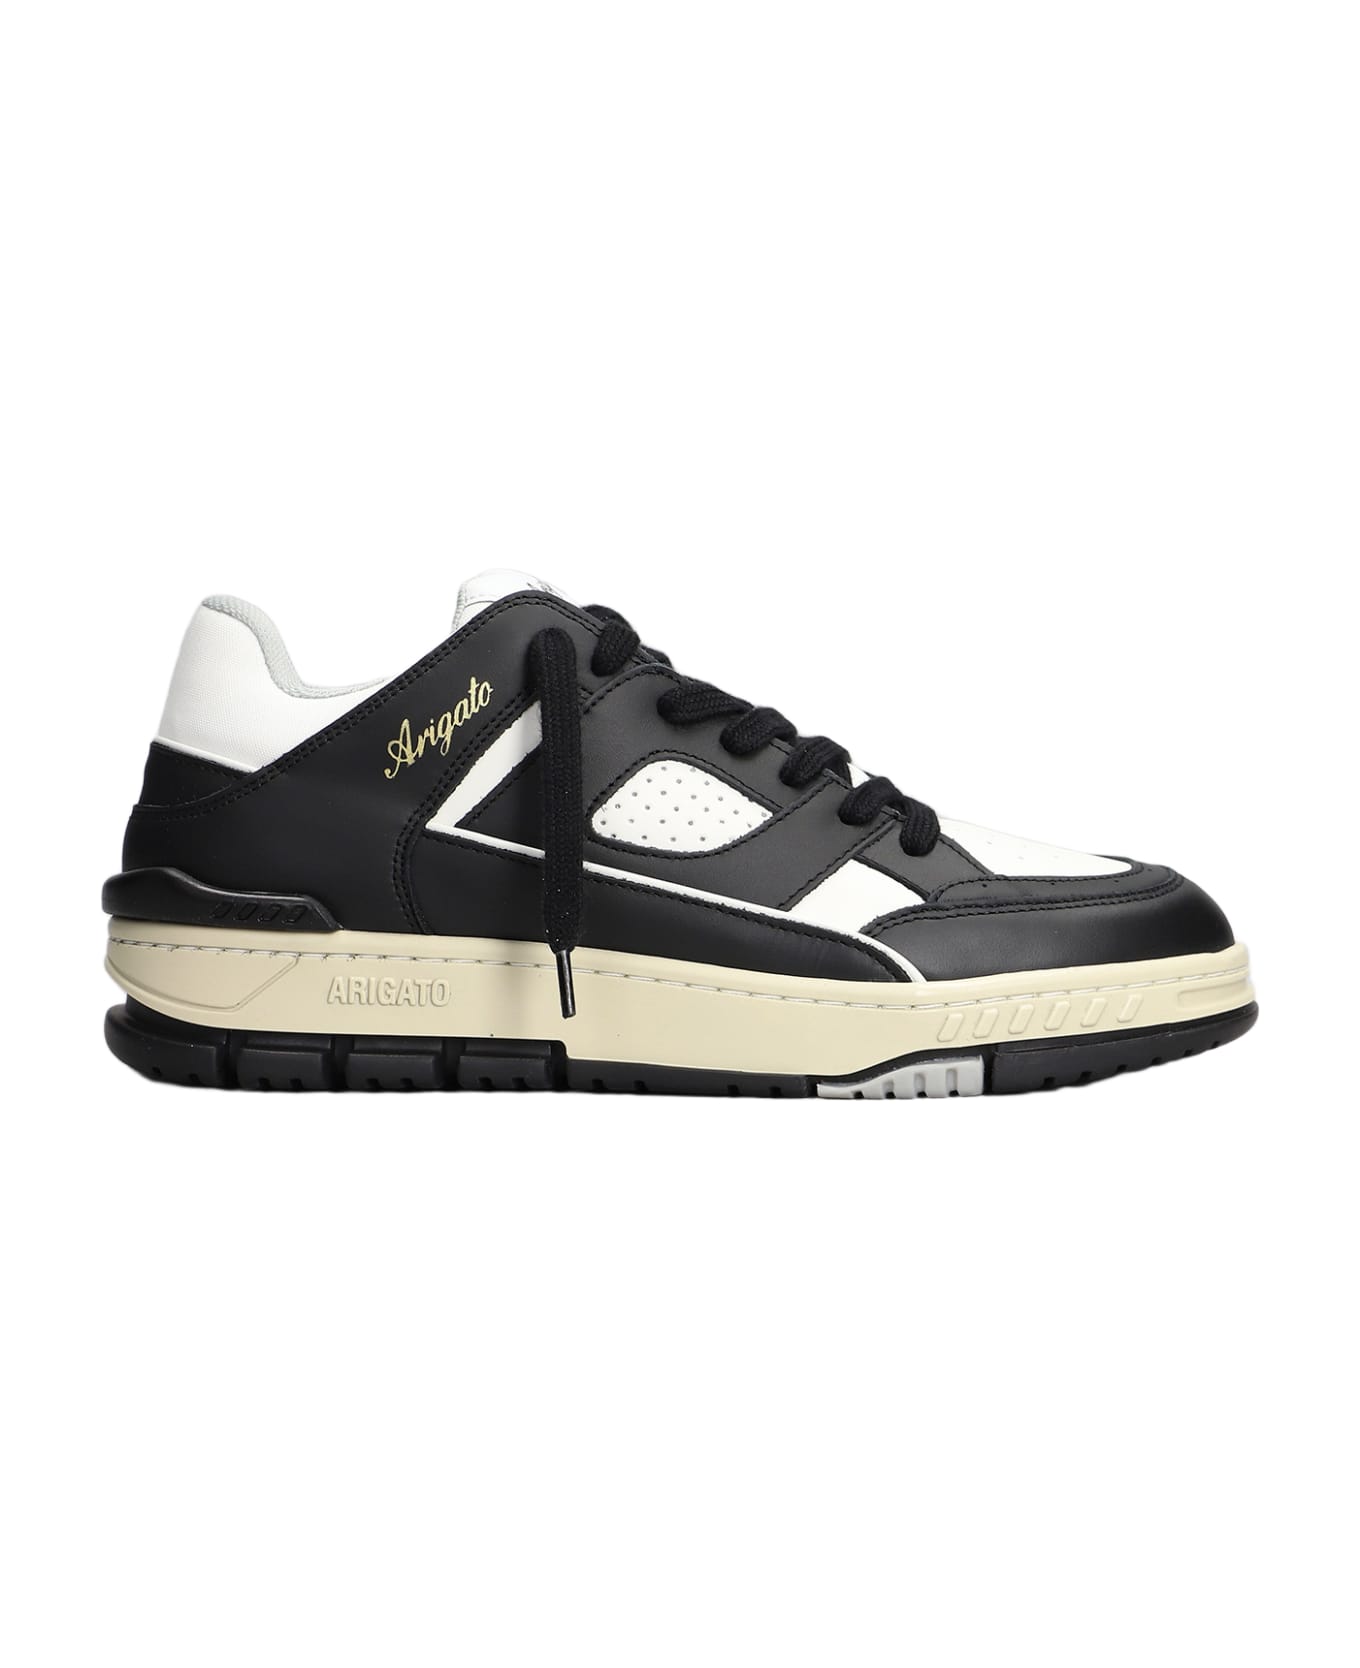 Axel Arigato Area Lo Sneakers In Black Leather - Nero bianco